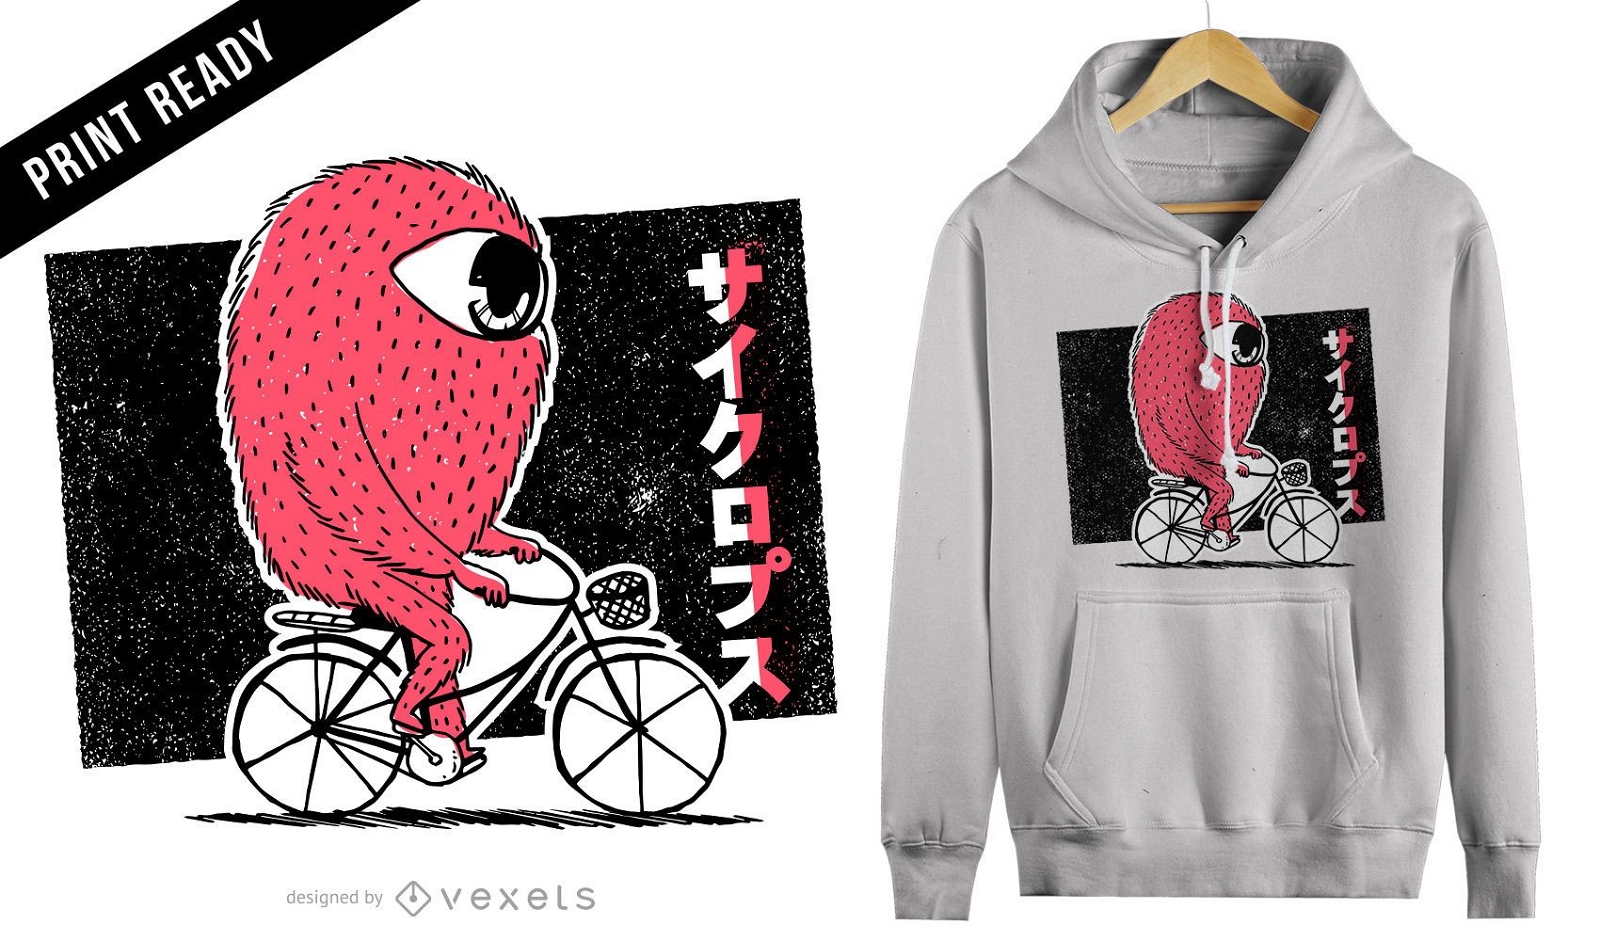 Cyclops riding bike t-shirt design